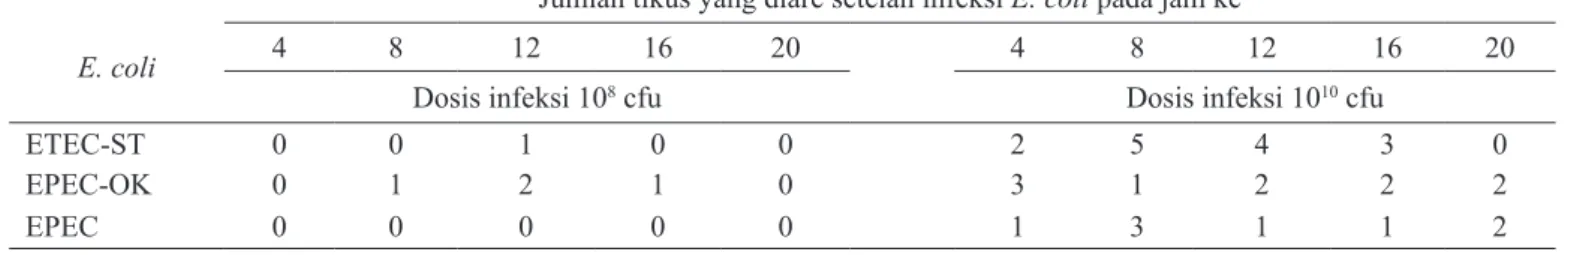 Tabel 2.  Jumlah tikus yang diare setelah diinfeksi dengan 10 8  dan 10 10 CFU  E. Coli